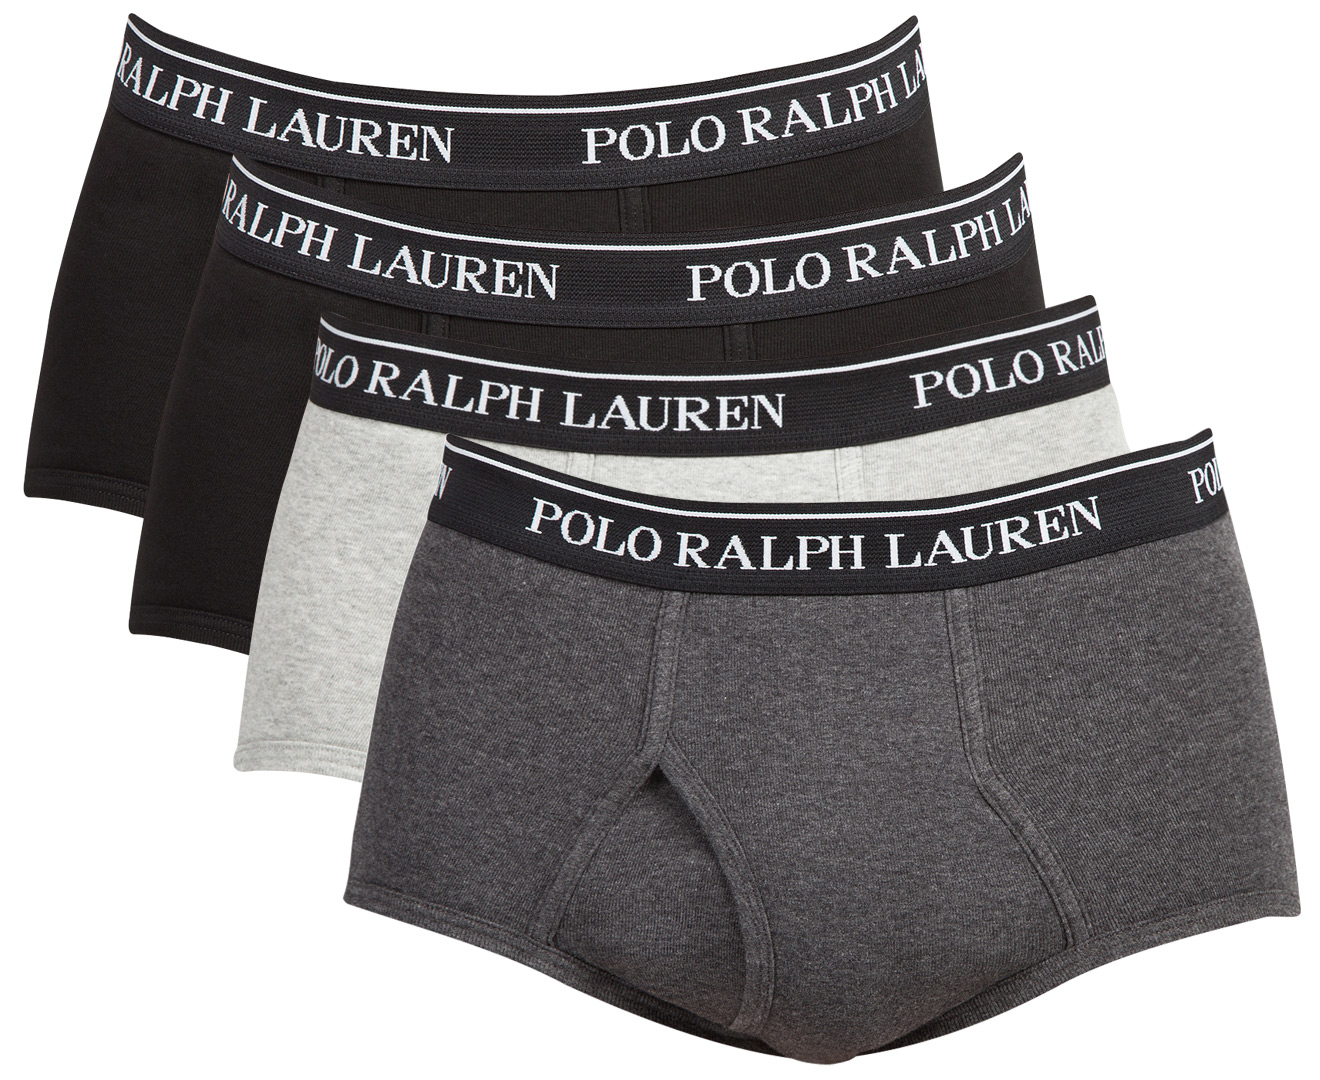 Polo Ralph Lauren Men's Classic Fit Cotton Mid Rise Briefs 4-Pack ...